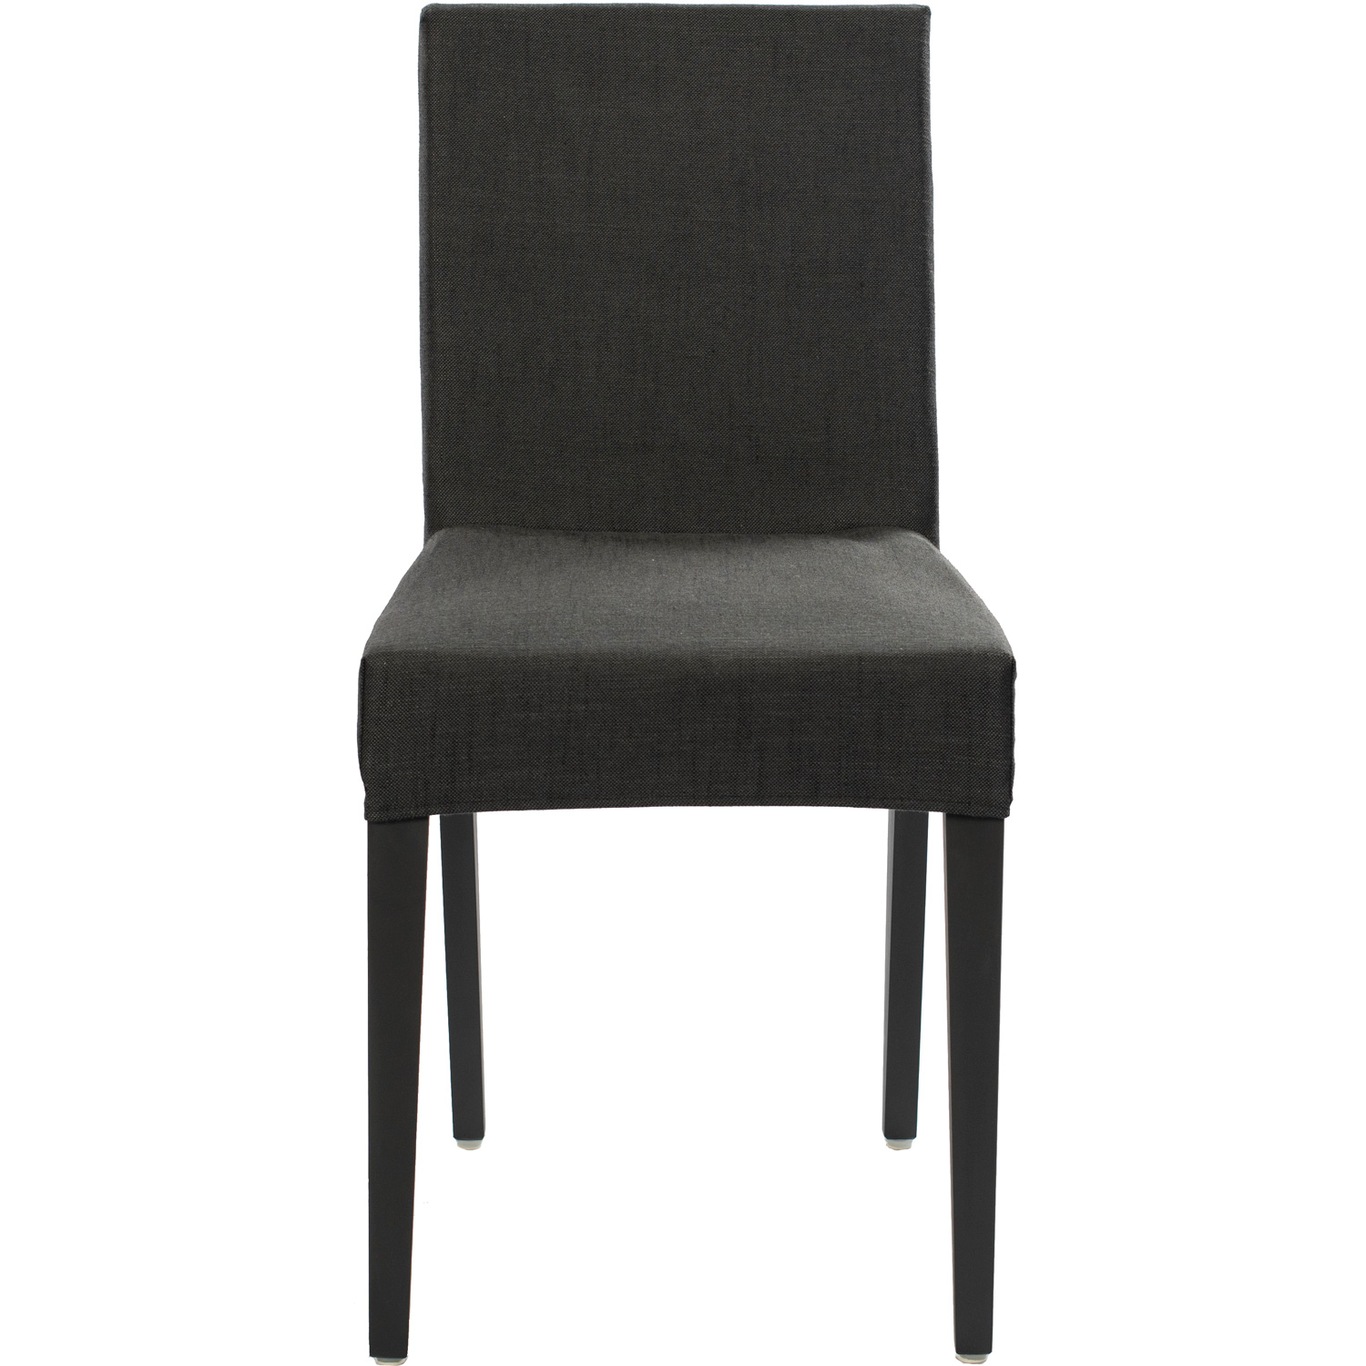 Edge Chair, Black / Piquet Anthracite 67